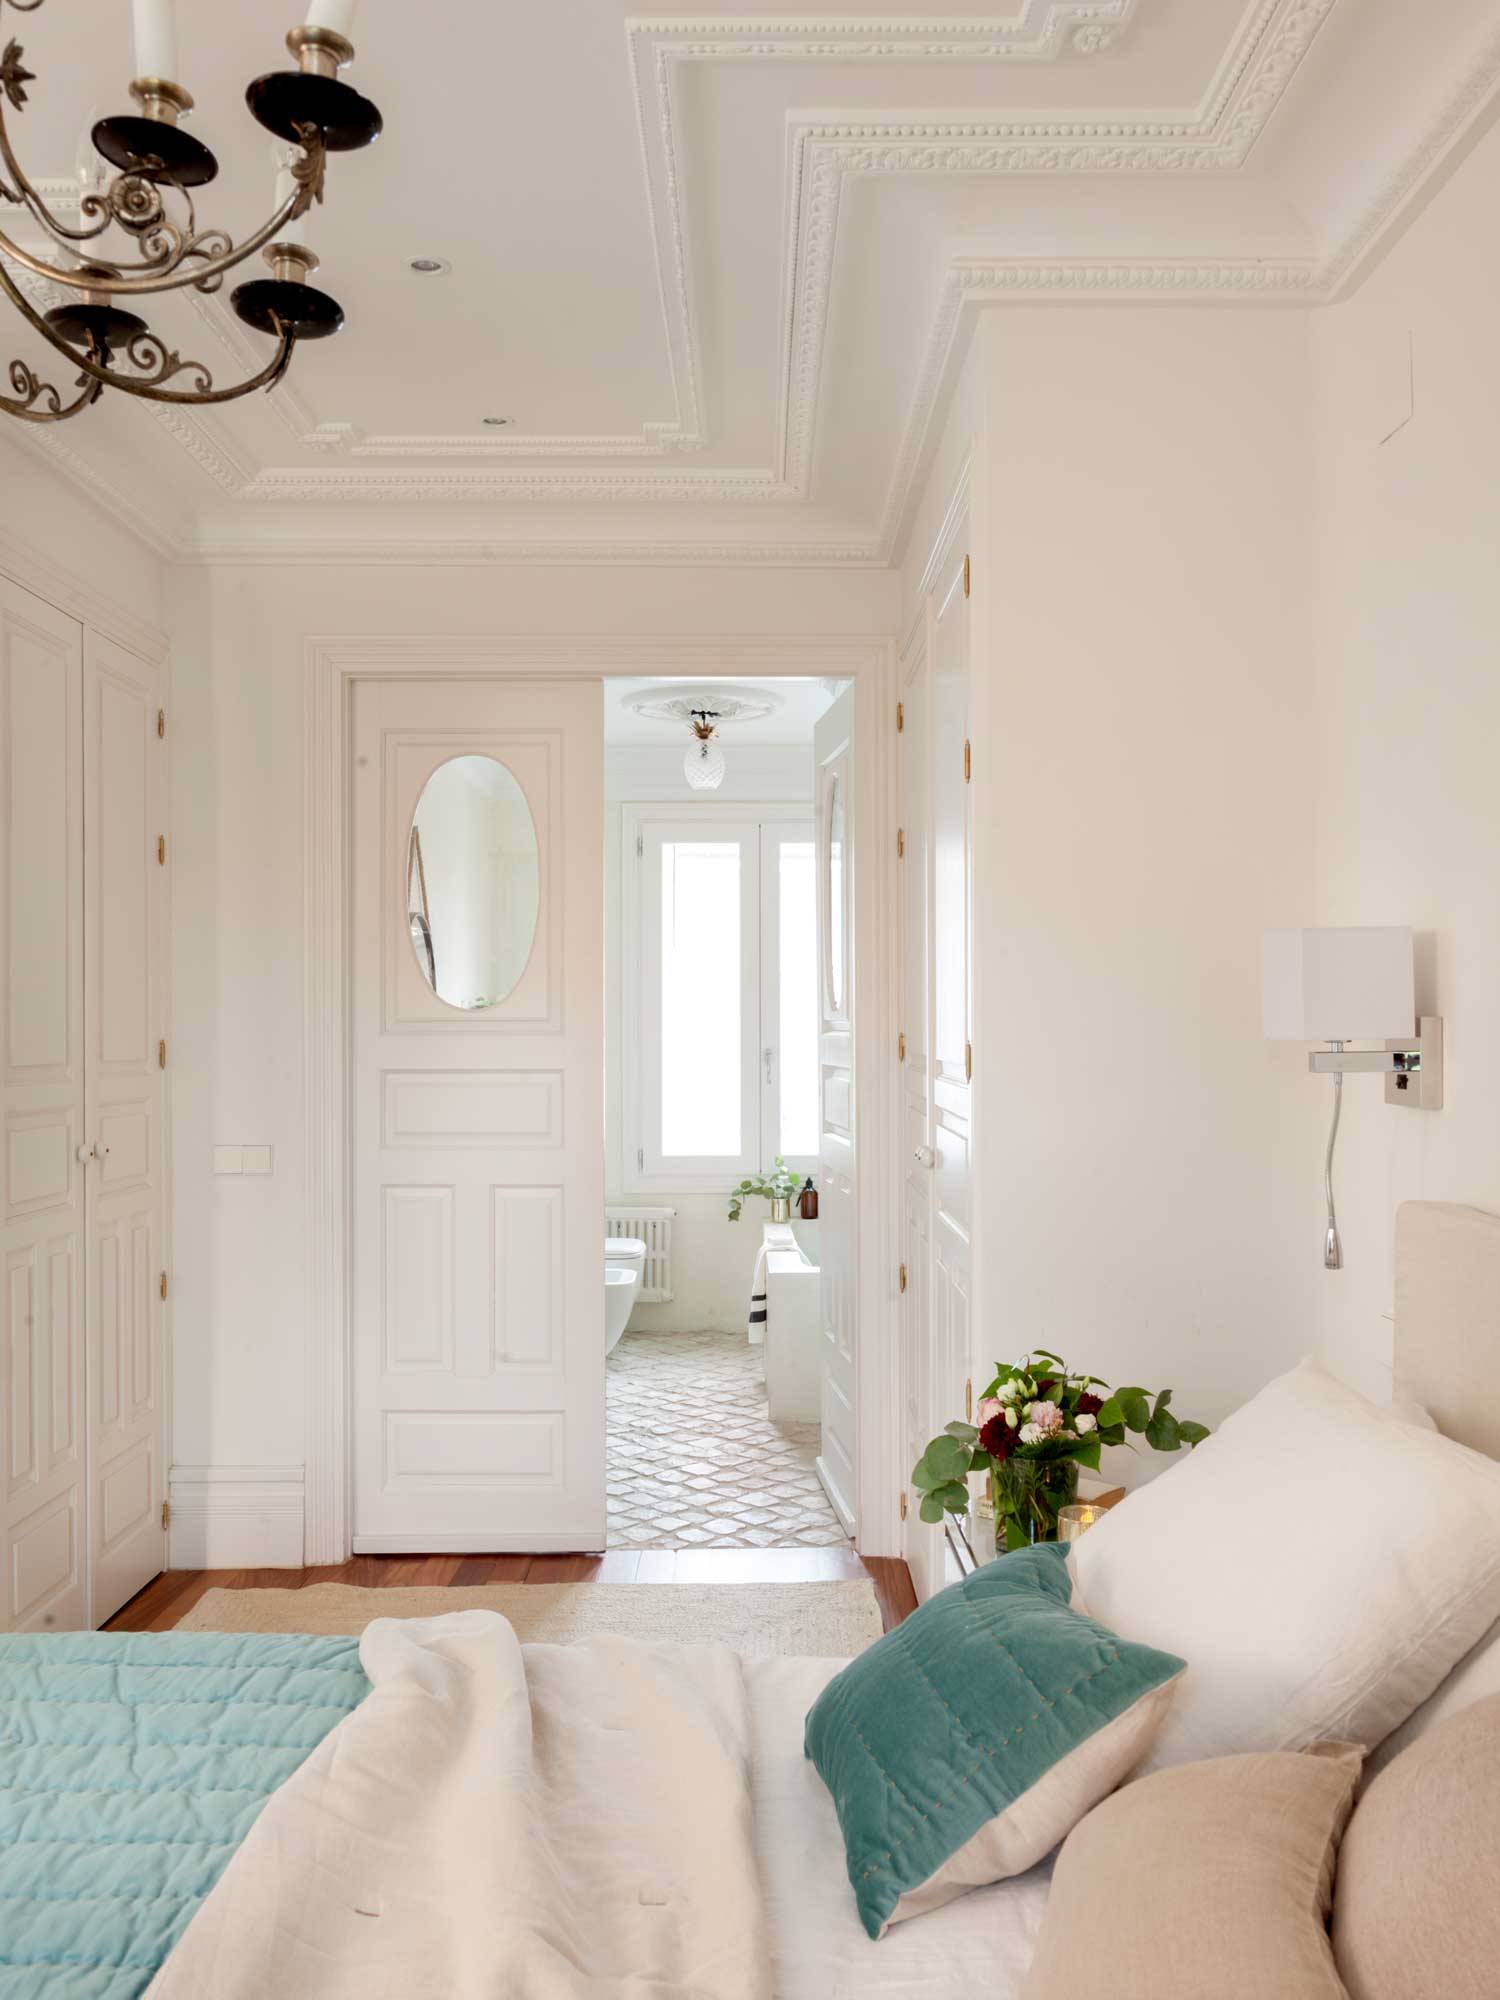 Dormitorio con puerta blanca con molduras y cristal ovalado a modo de ventana que conecta con el baño en suite.